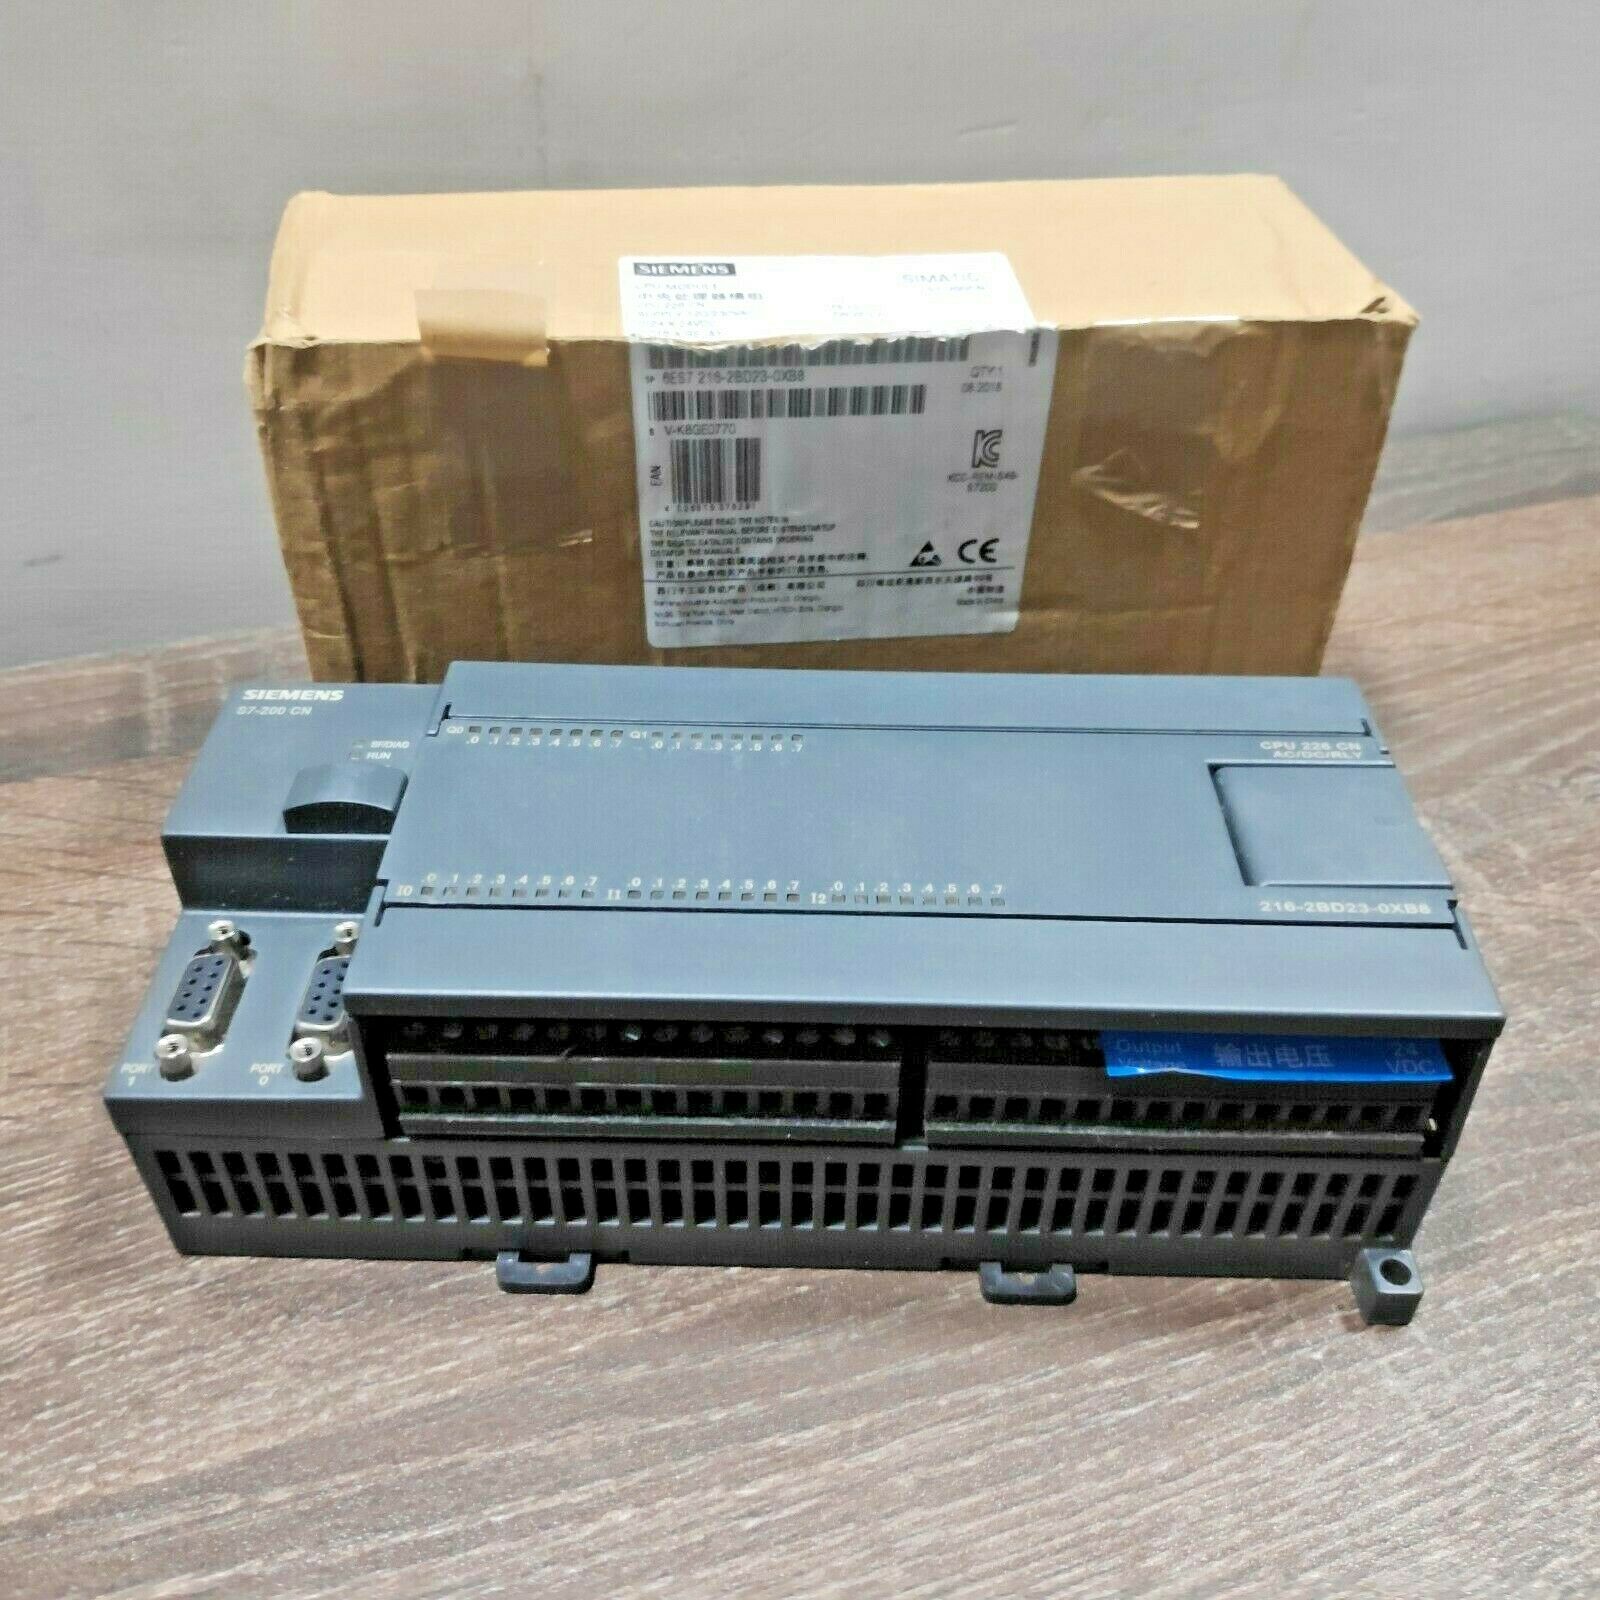 SIEMENS 6ES7216-2BD23-0XB8 SIMATIC S7-200 CPU CN 226 COMPACT UNIT PLC 